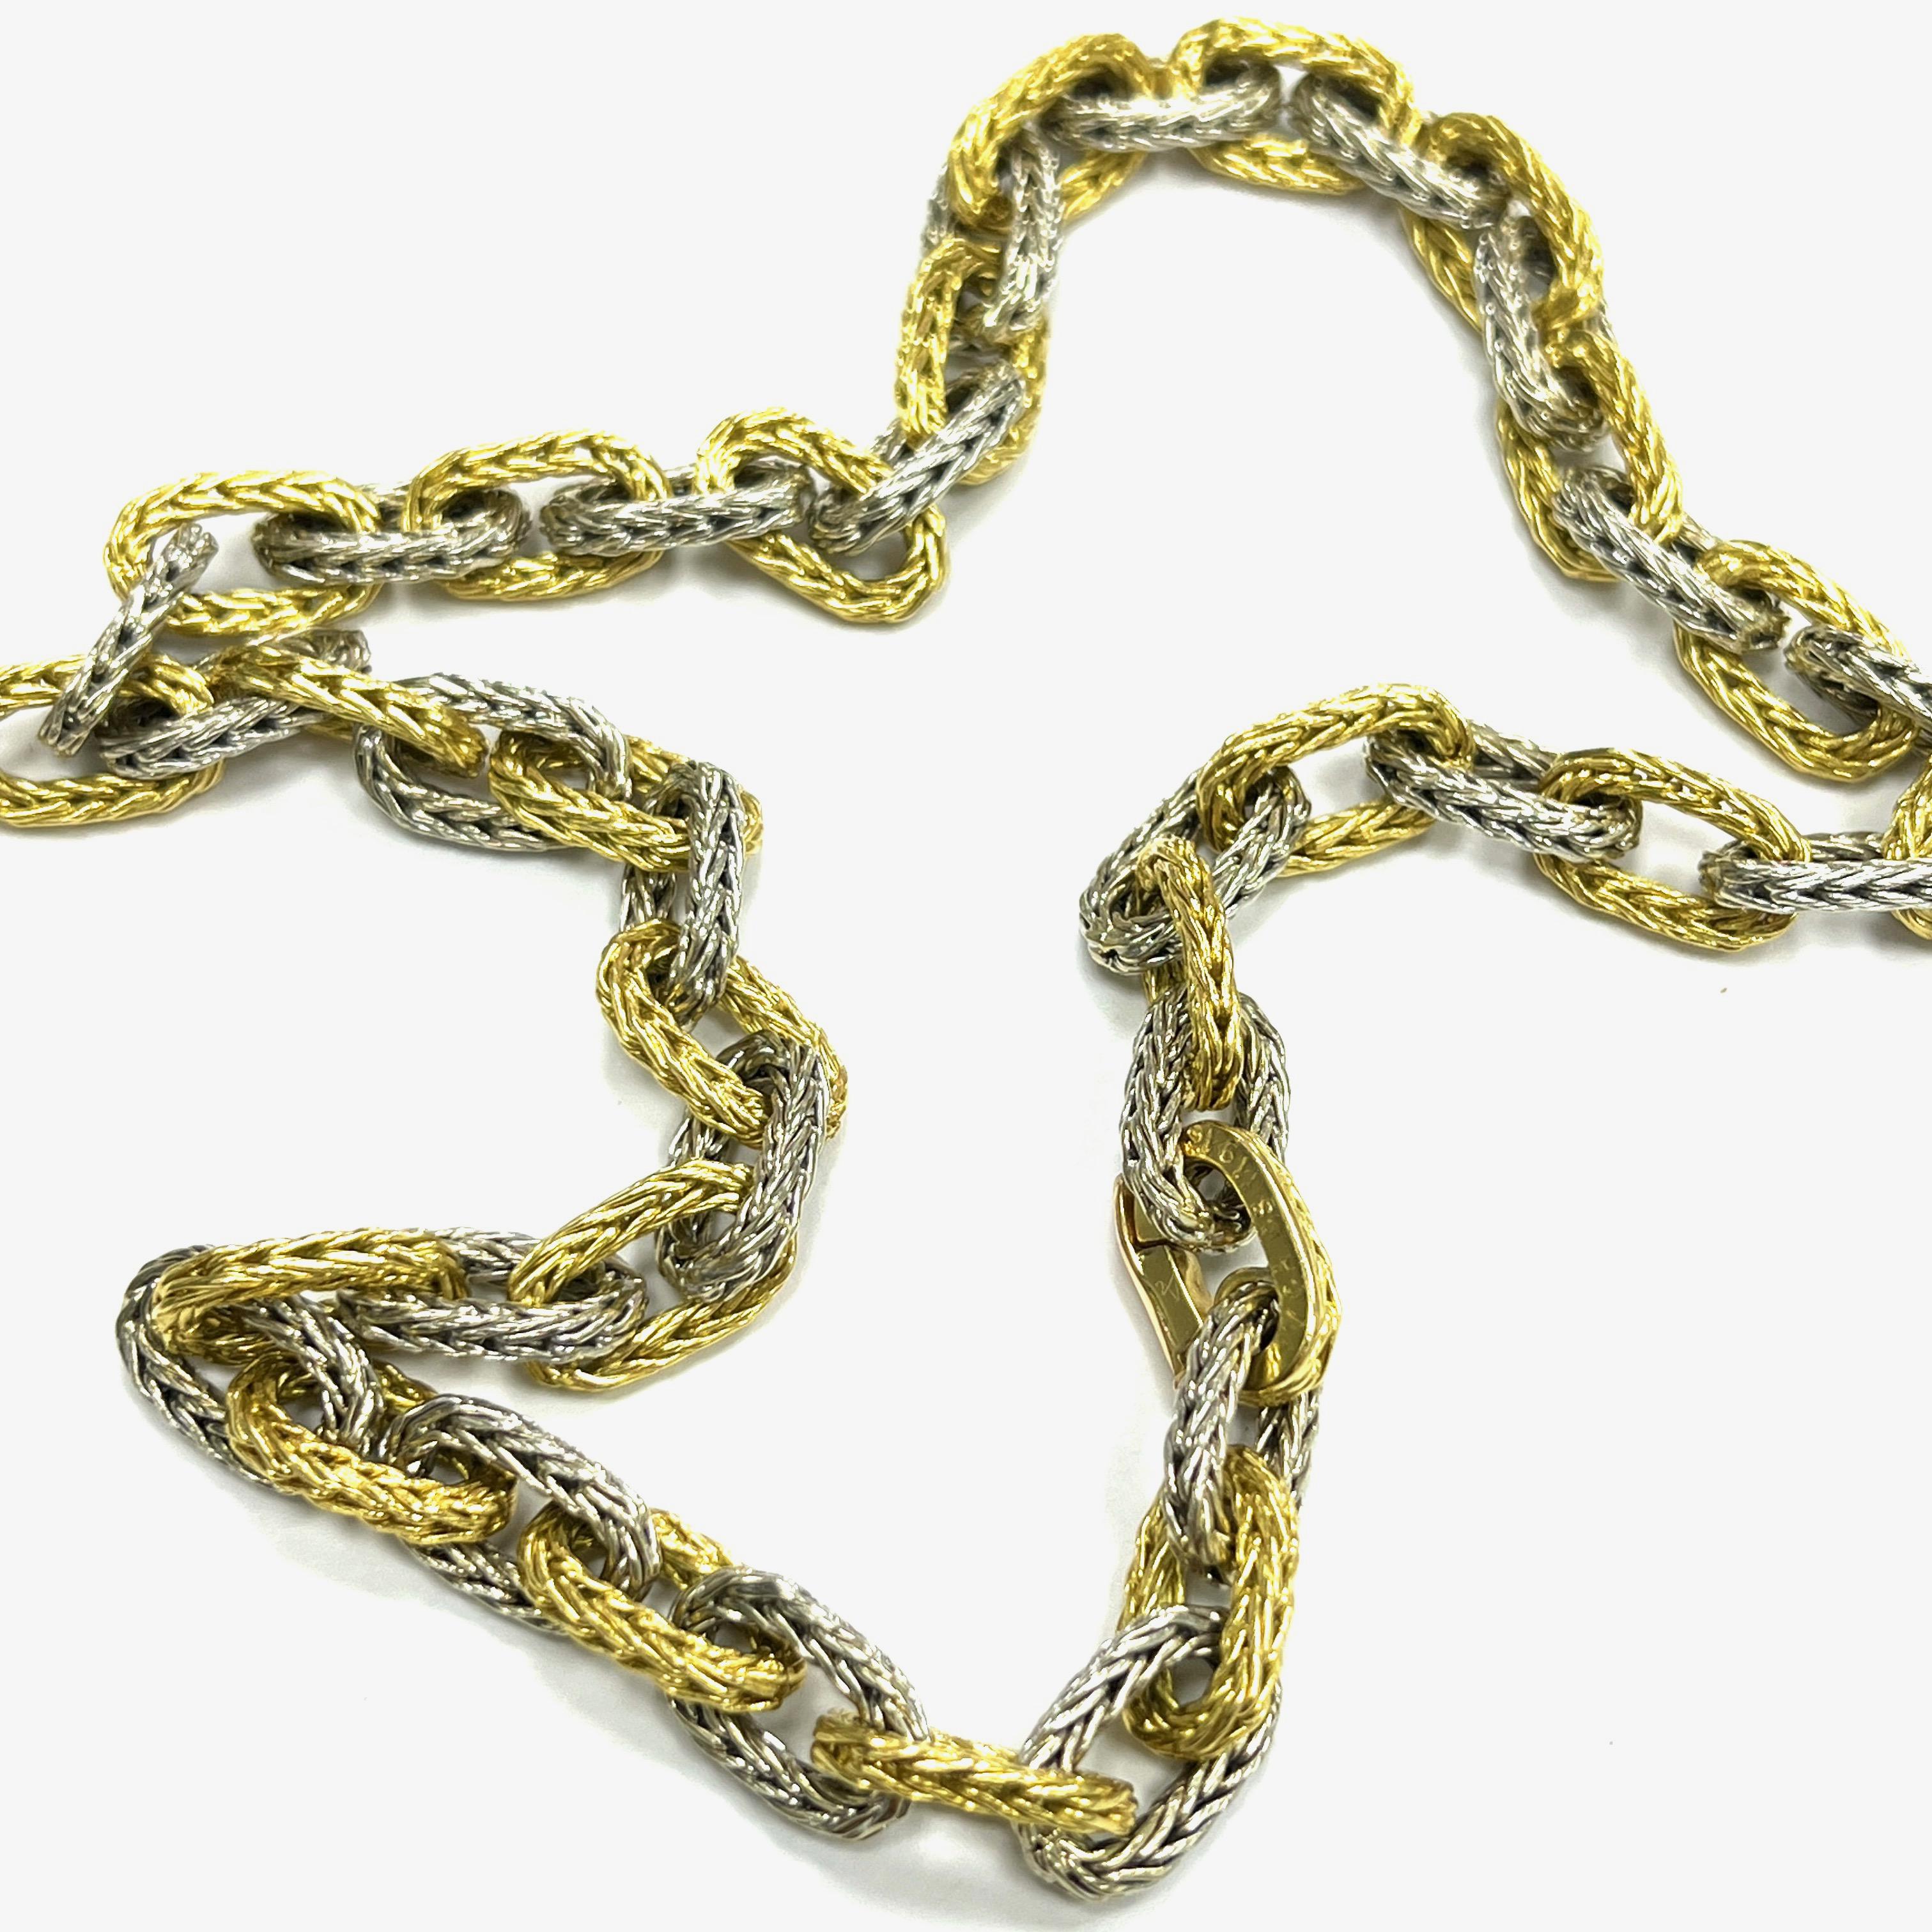 Collier à chaîne en or bicolore Van Cleef & Arpels

Alternance d'or jaune et d'or blanc 18 carats ; marqué VCA, CS, 11916

Taille : longueur 16.75 pouces
Poids total : 61,1 grammes